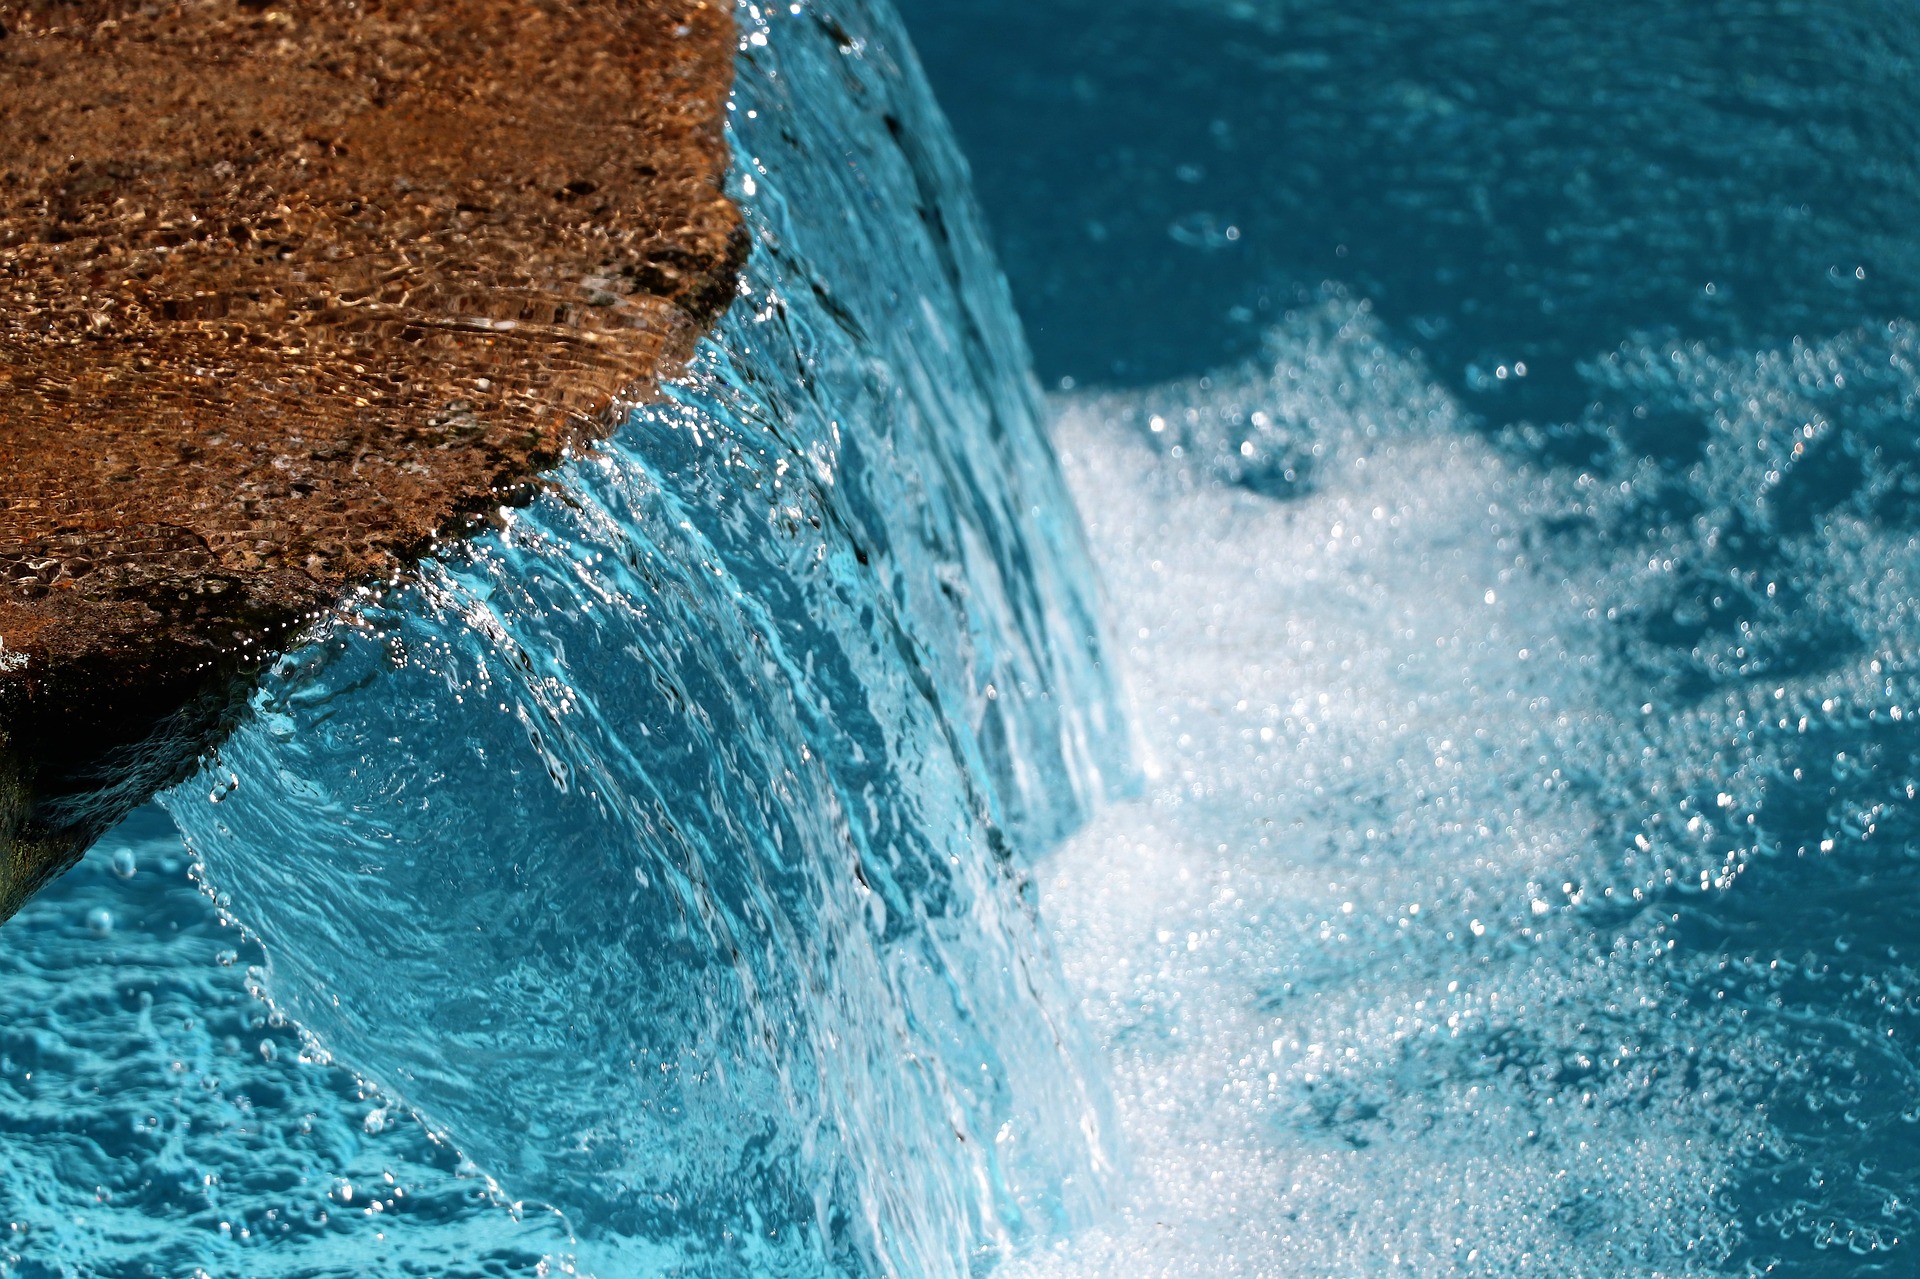 Вода дискавери. Голубой водопад. Водопад с голубой водой. Океанский водопад. Вода источник жизни фото.